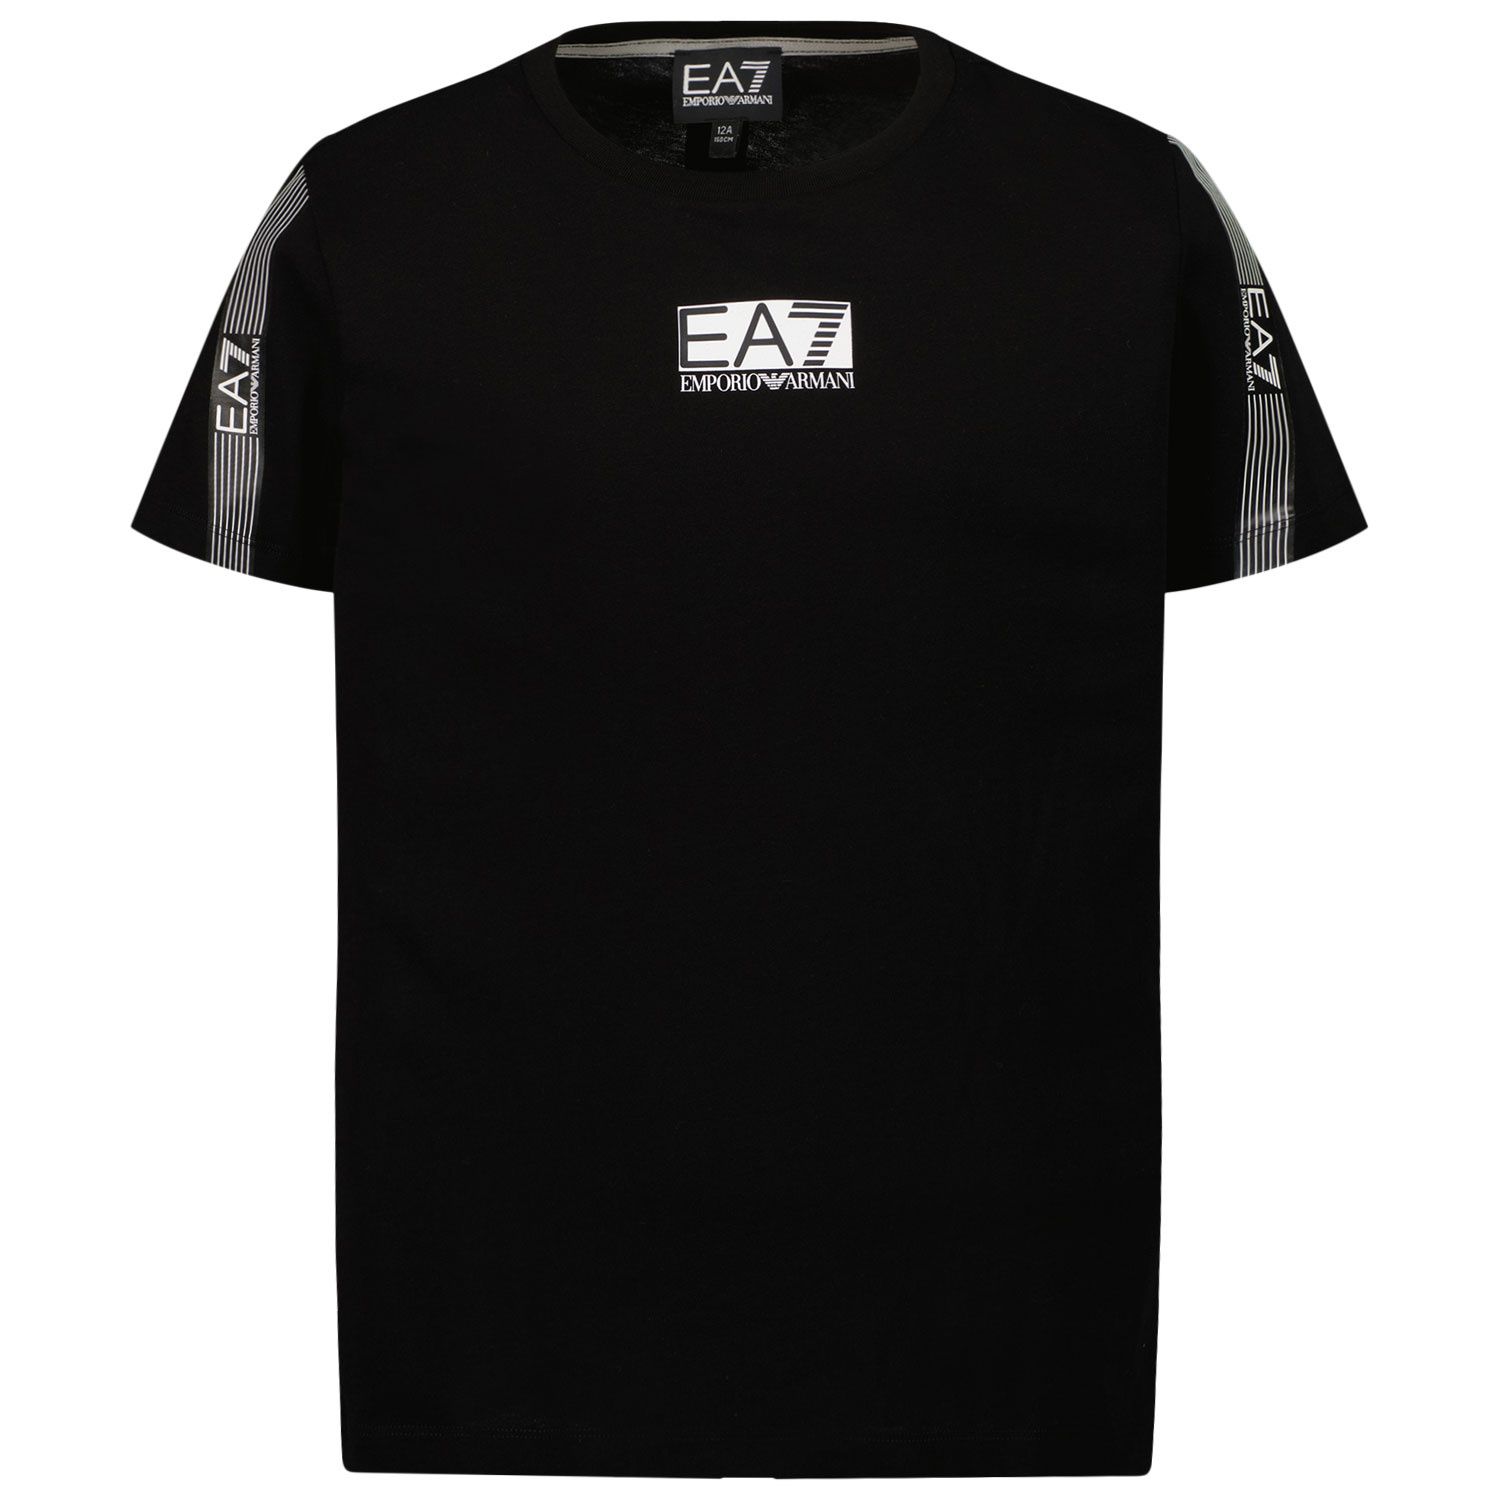 Afbeelding van EA7 3LBT57 BJ02Z kinder t-shirt zwart